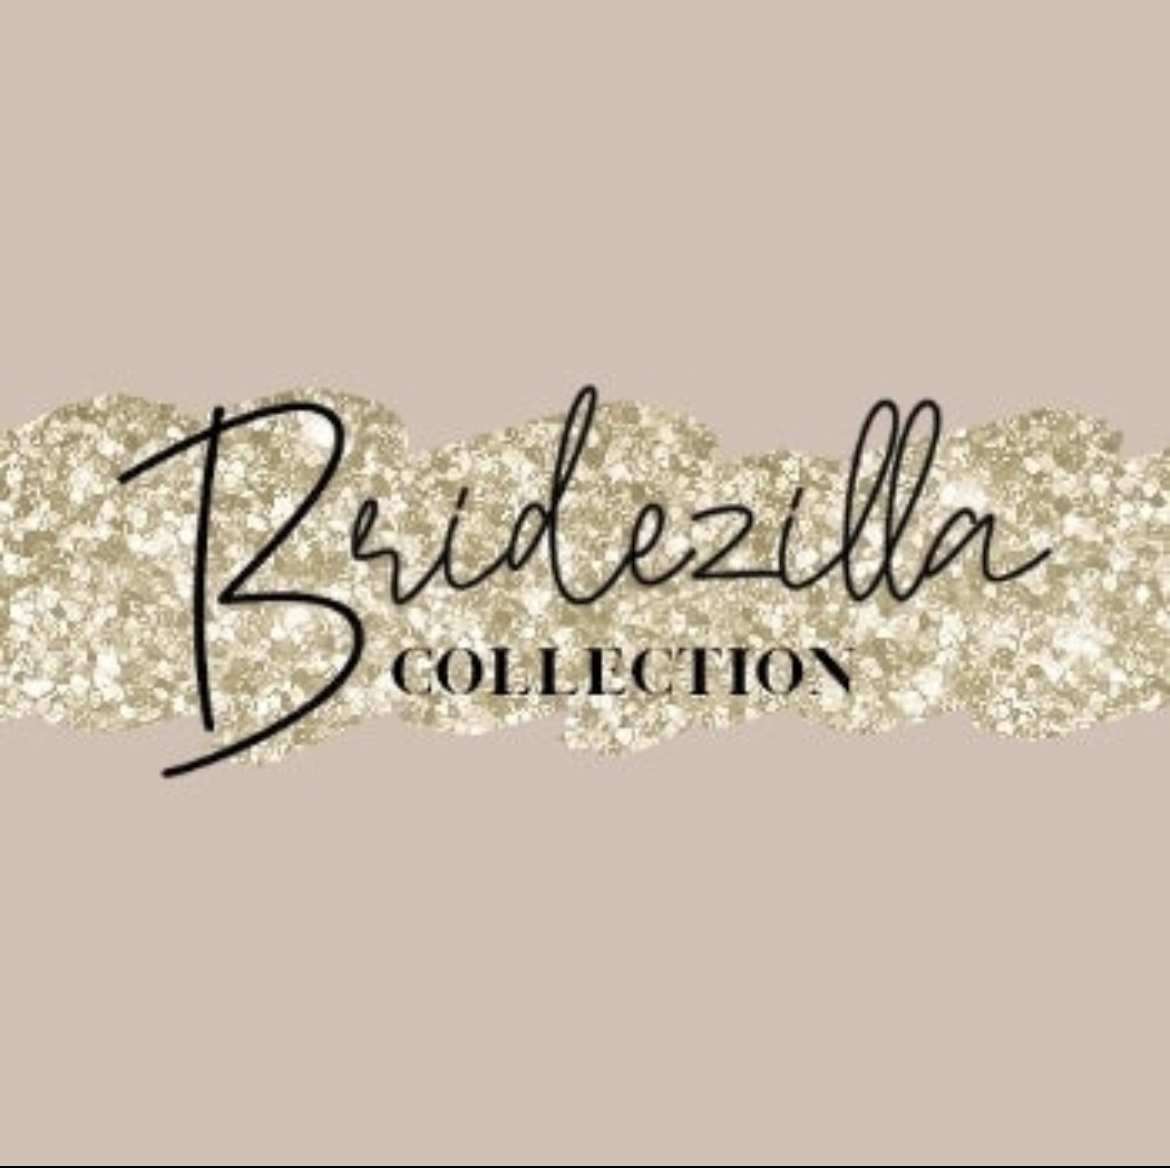 Bridezilla Colletion